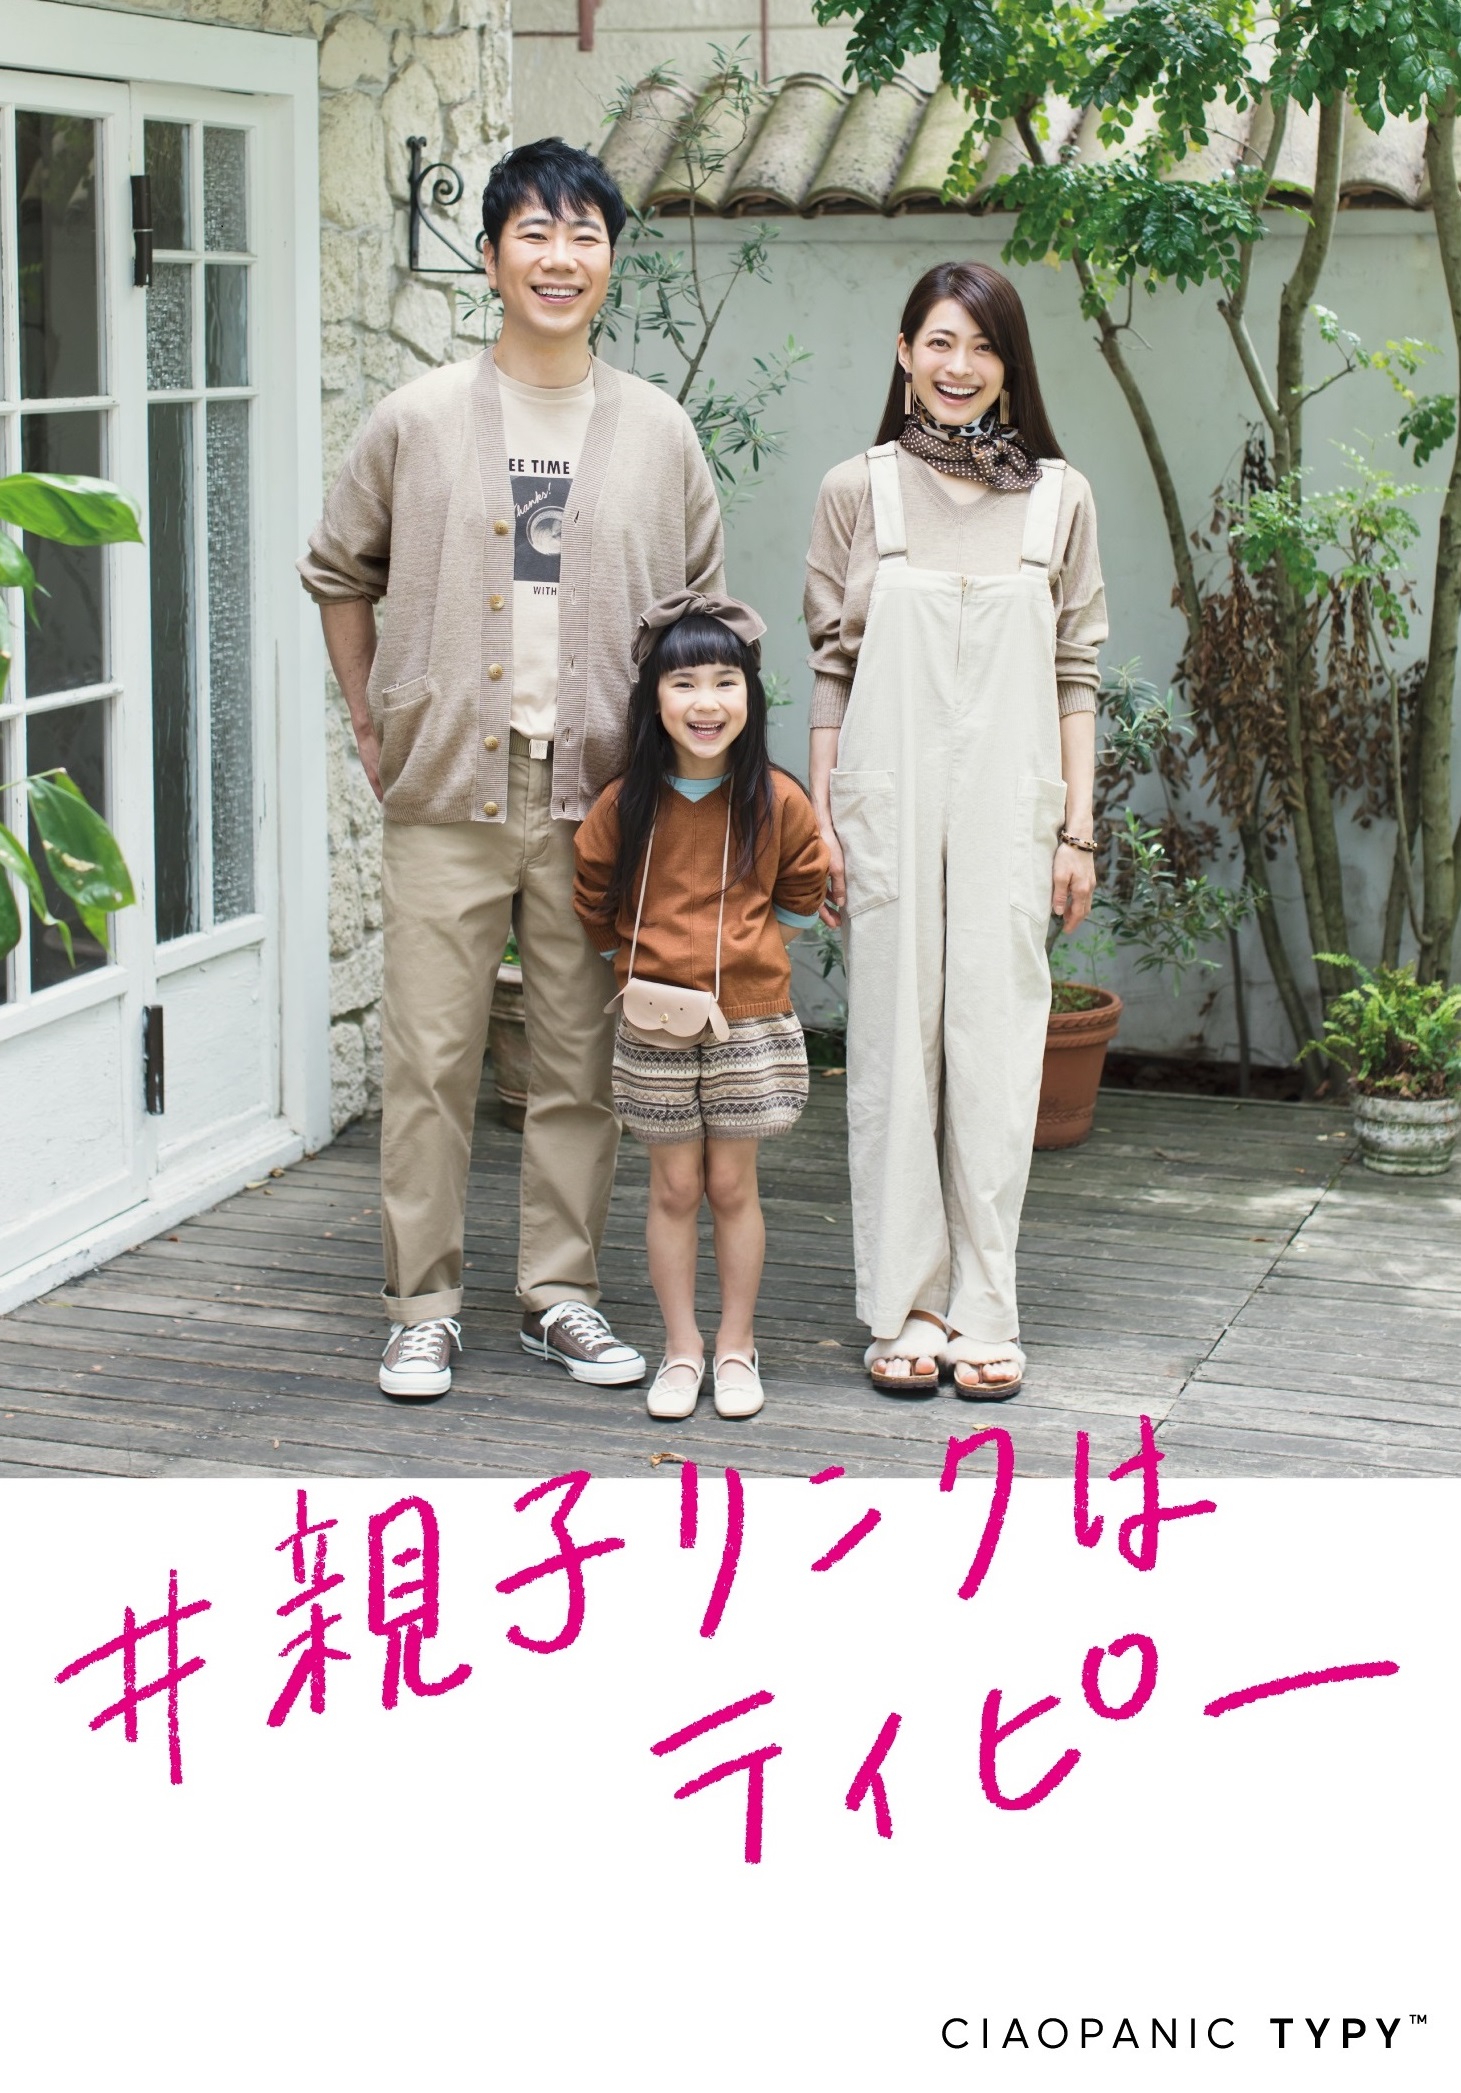 藤井隆さん 乙葉さん夫妻がciaopanic Typyのイメージモデルで登場 株式会社パルグループホールディングスのプレスリリース